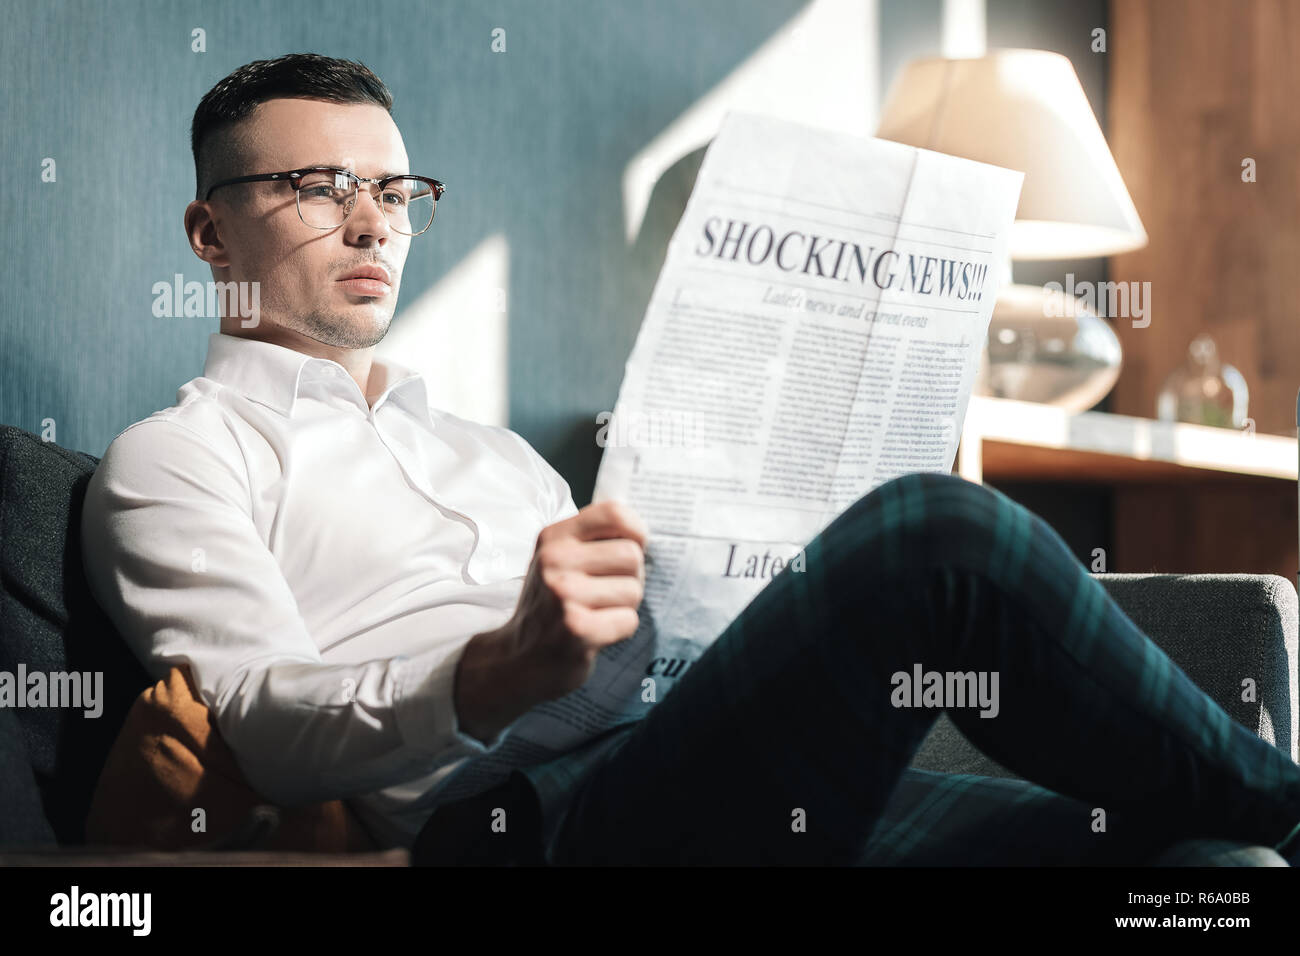 Beau jeune homme portant des lunettes lecture nouvelle choquante Banque D'Images